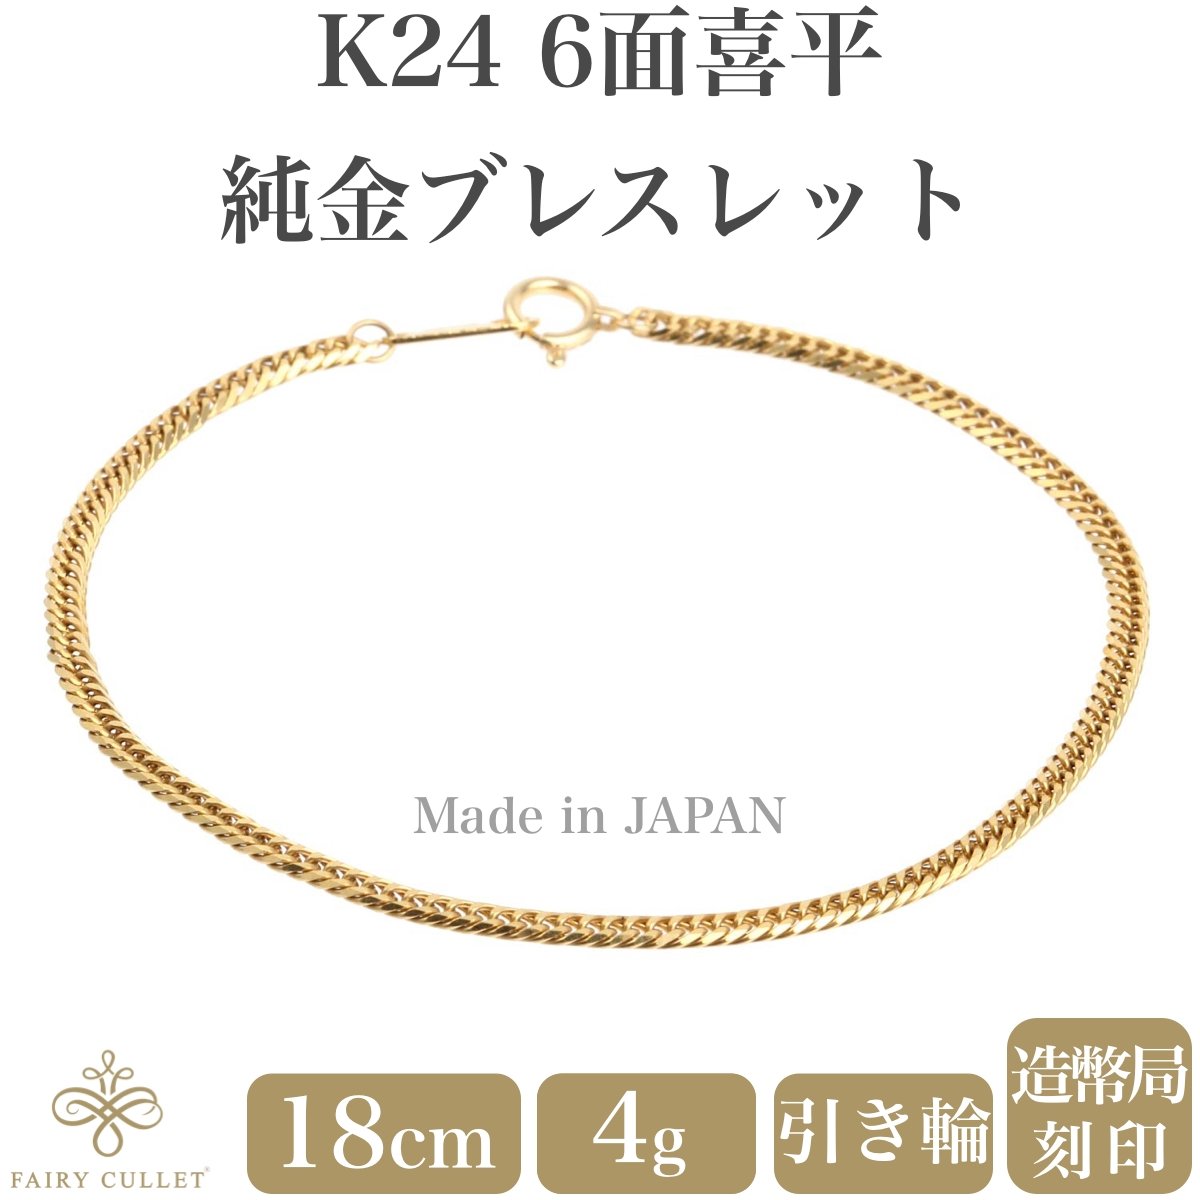 24金ブレスレット K24 6面W喜平チェーン 日本製 4g 18cm 引き輪 - 喜平